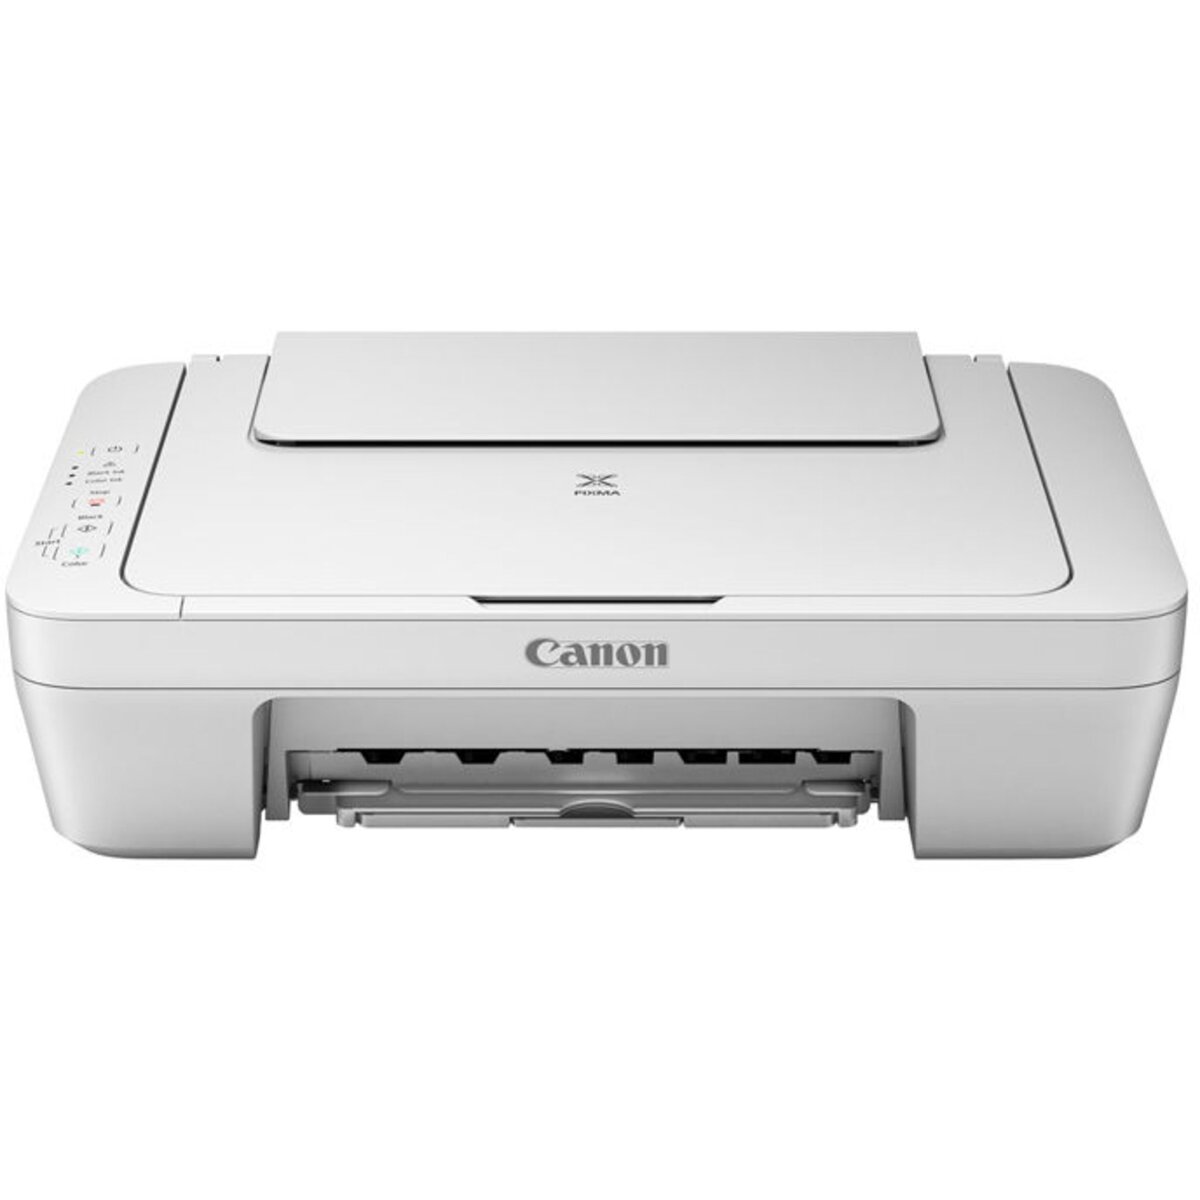 Canon mg2500 series. Принтер Canon mg2500. Принтер/сканер/струйное МФУ Canon PIXMA,. Canon PIXMA g540. Кэнон пиксма 540.